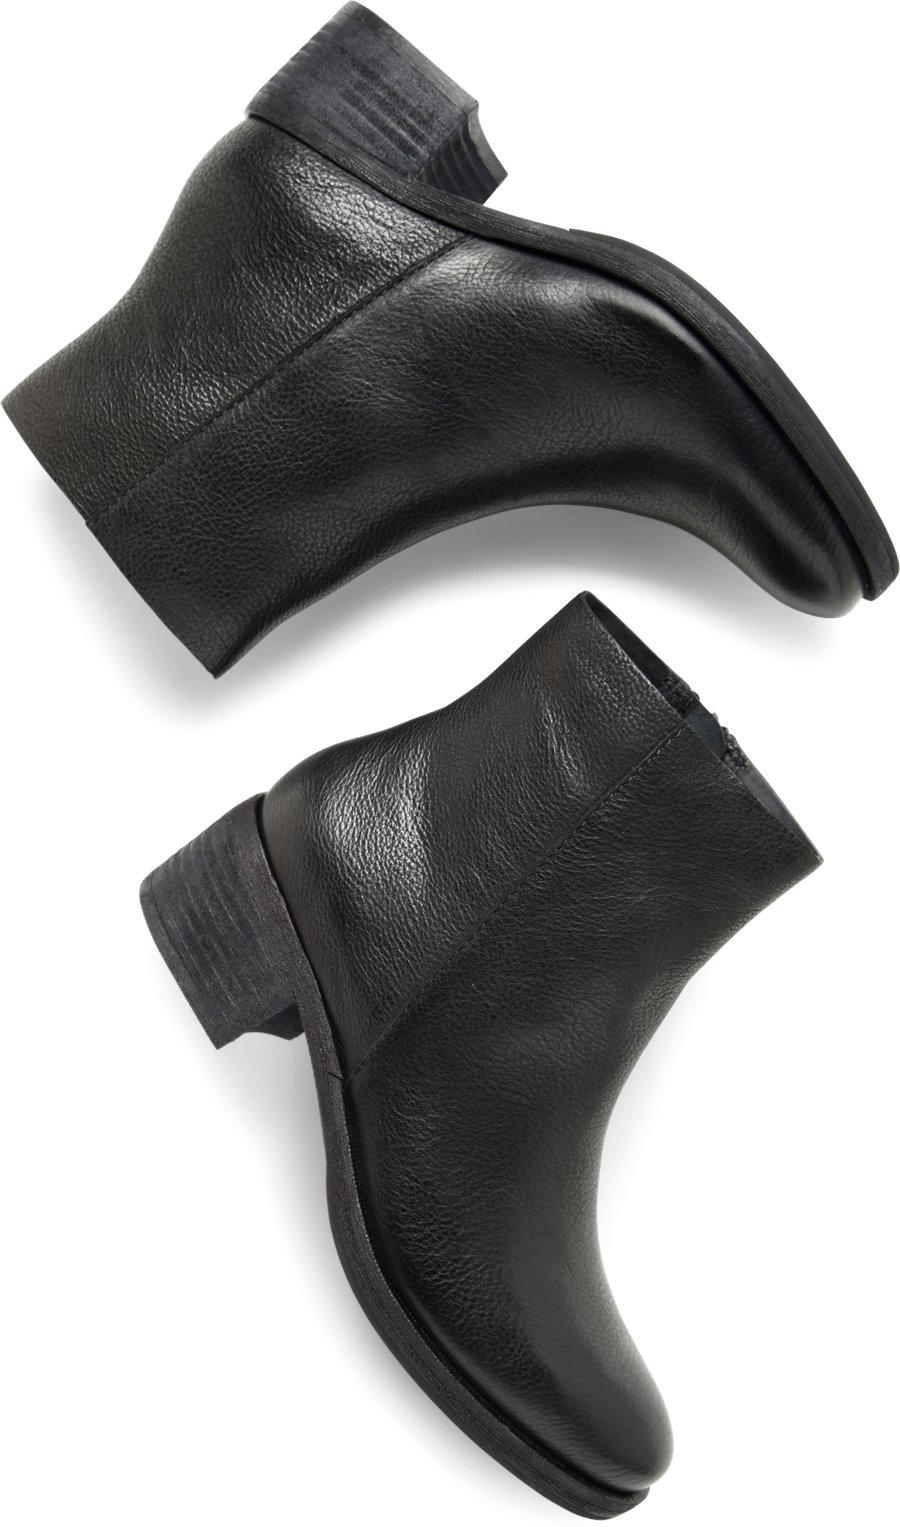 Korkease Shoes - Korkease Mayten Women's Shoes in Black color. - #korkeaseshoes #blackshoes